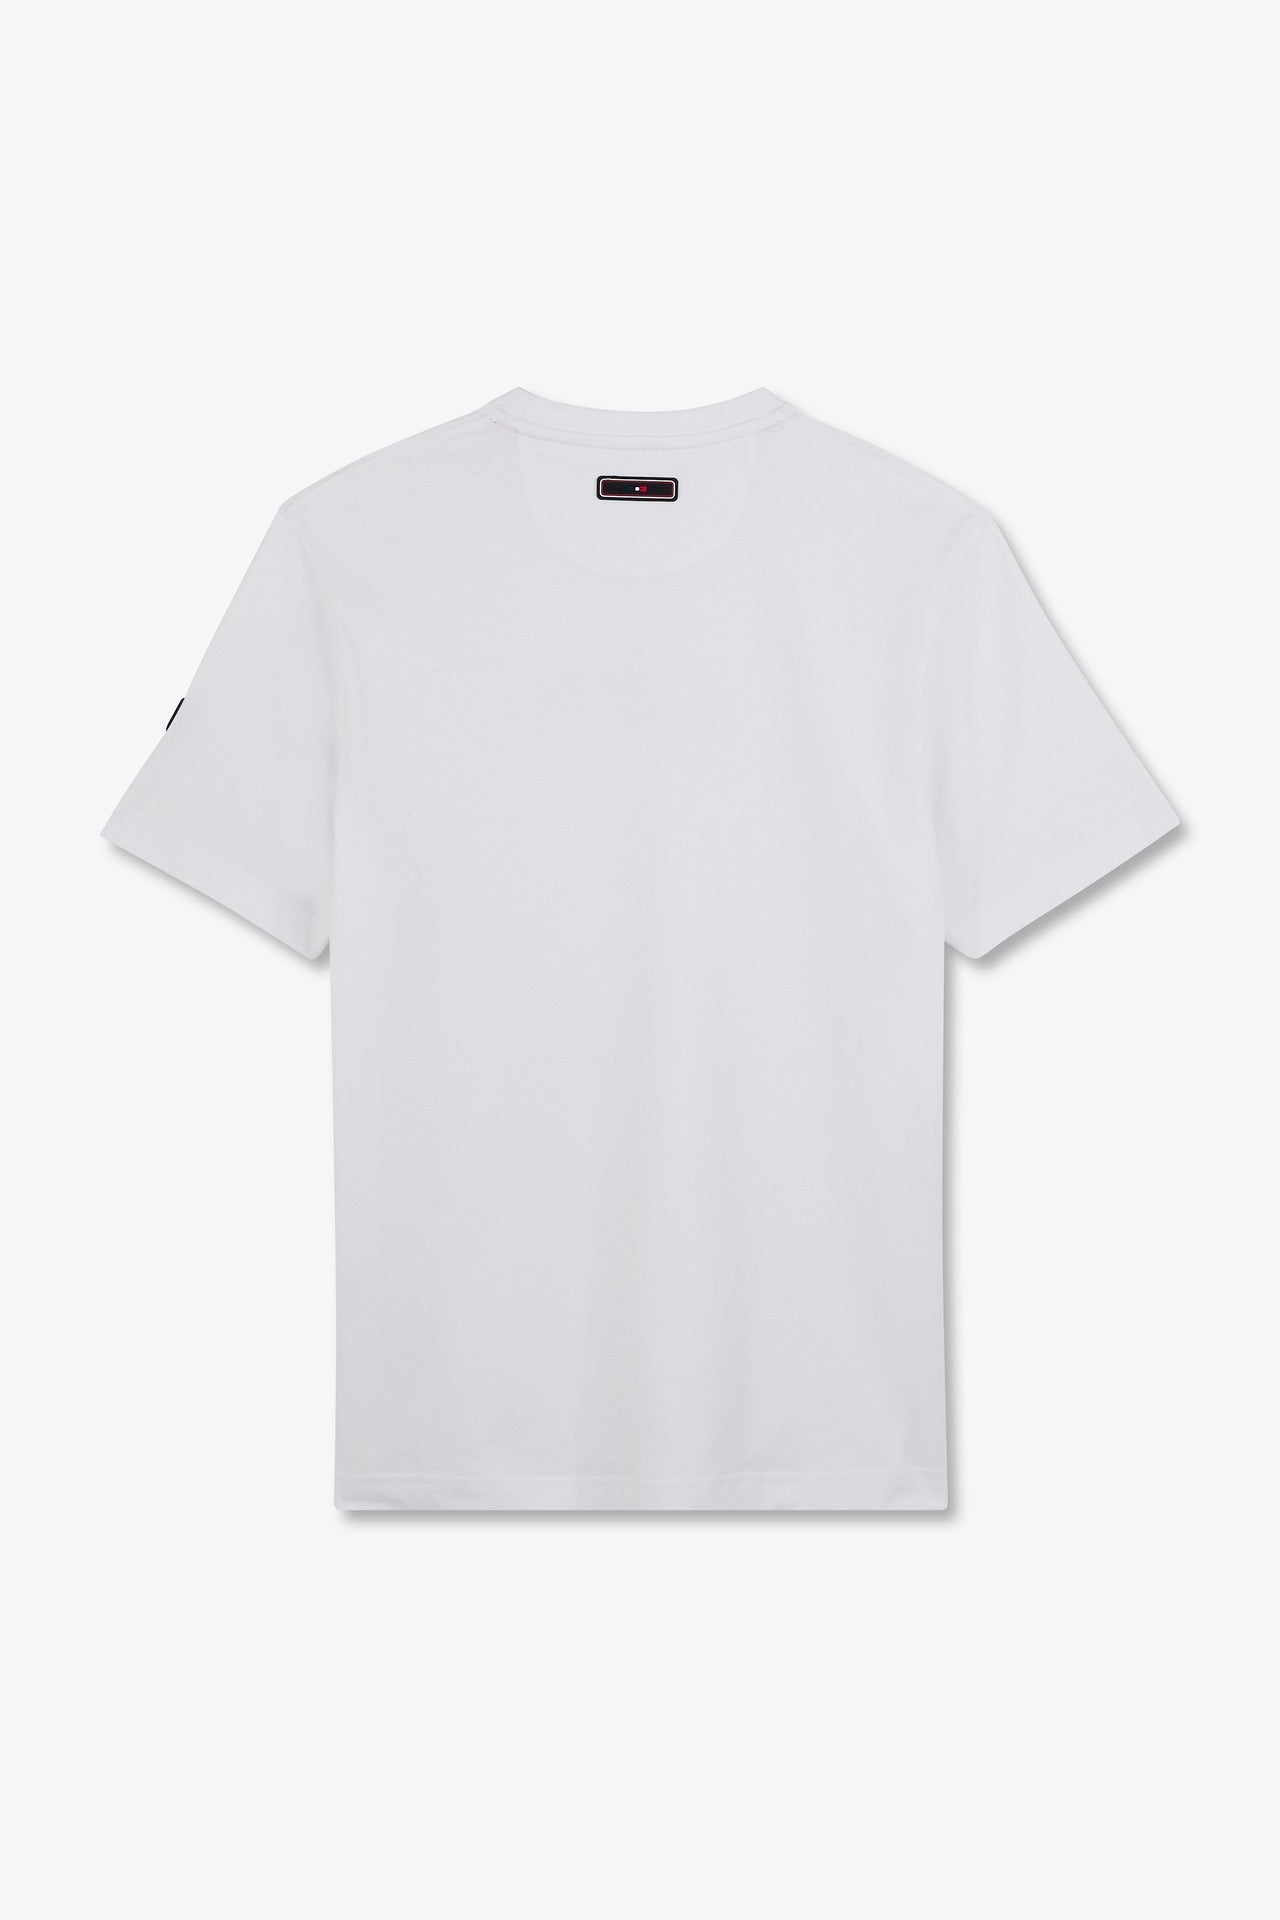 T-shirt blanc à manches courtes